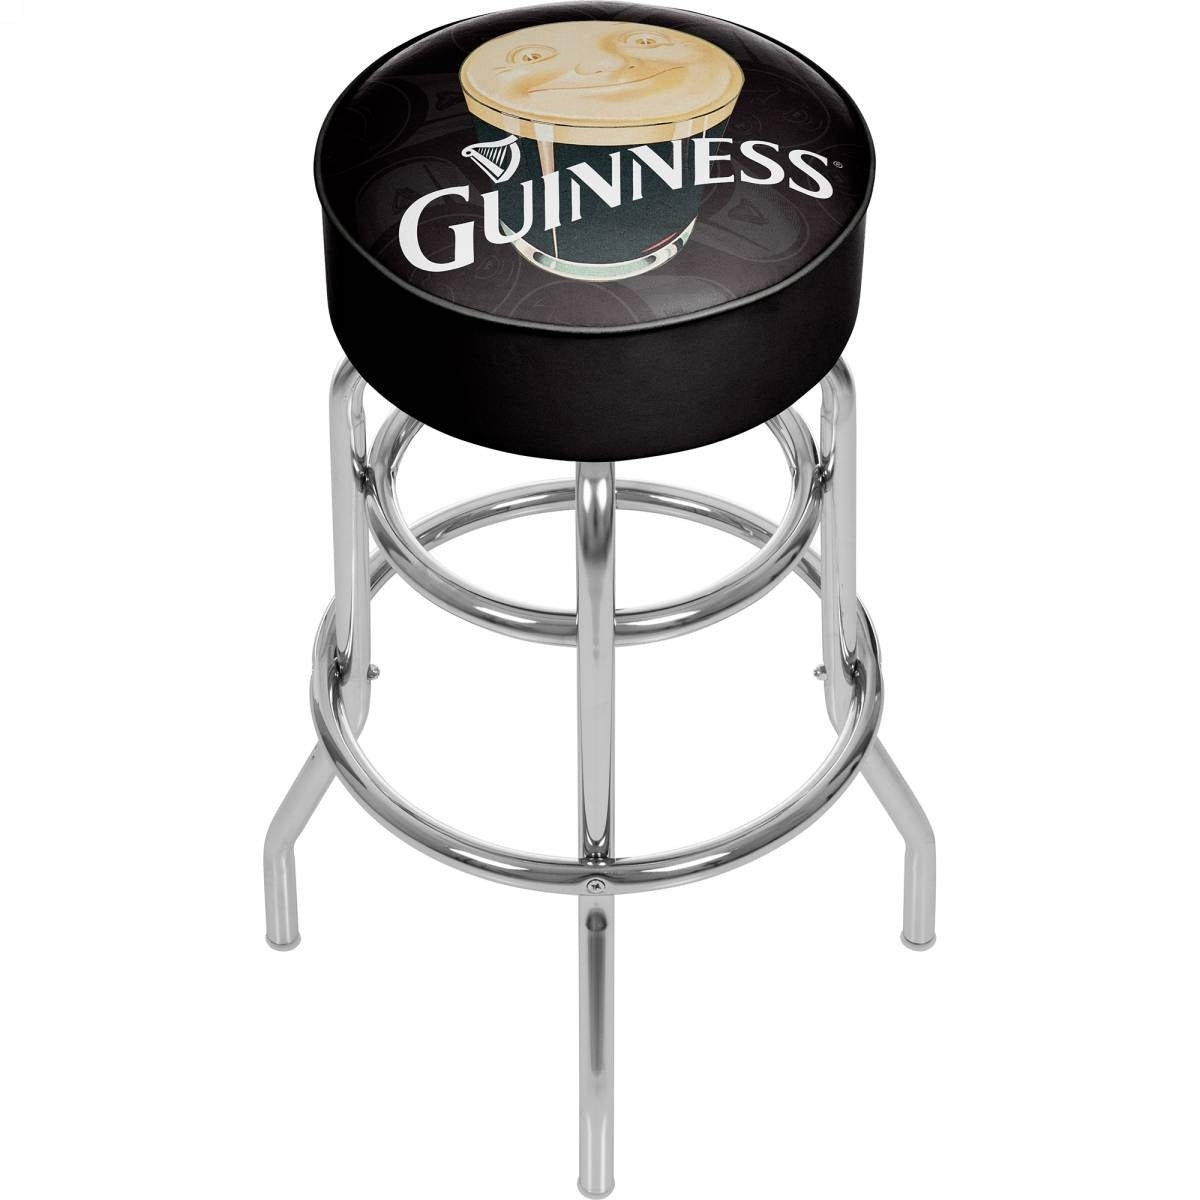 Guinness Padded Swivel Bar Stool - Smiling Pint